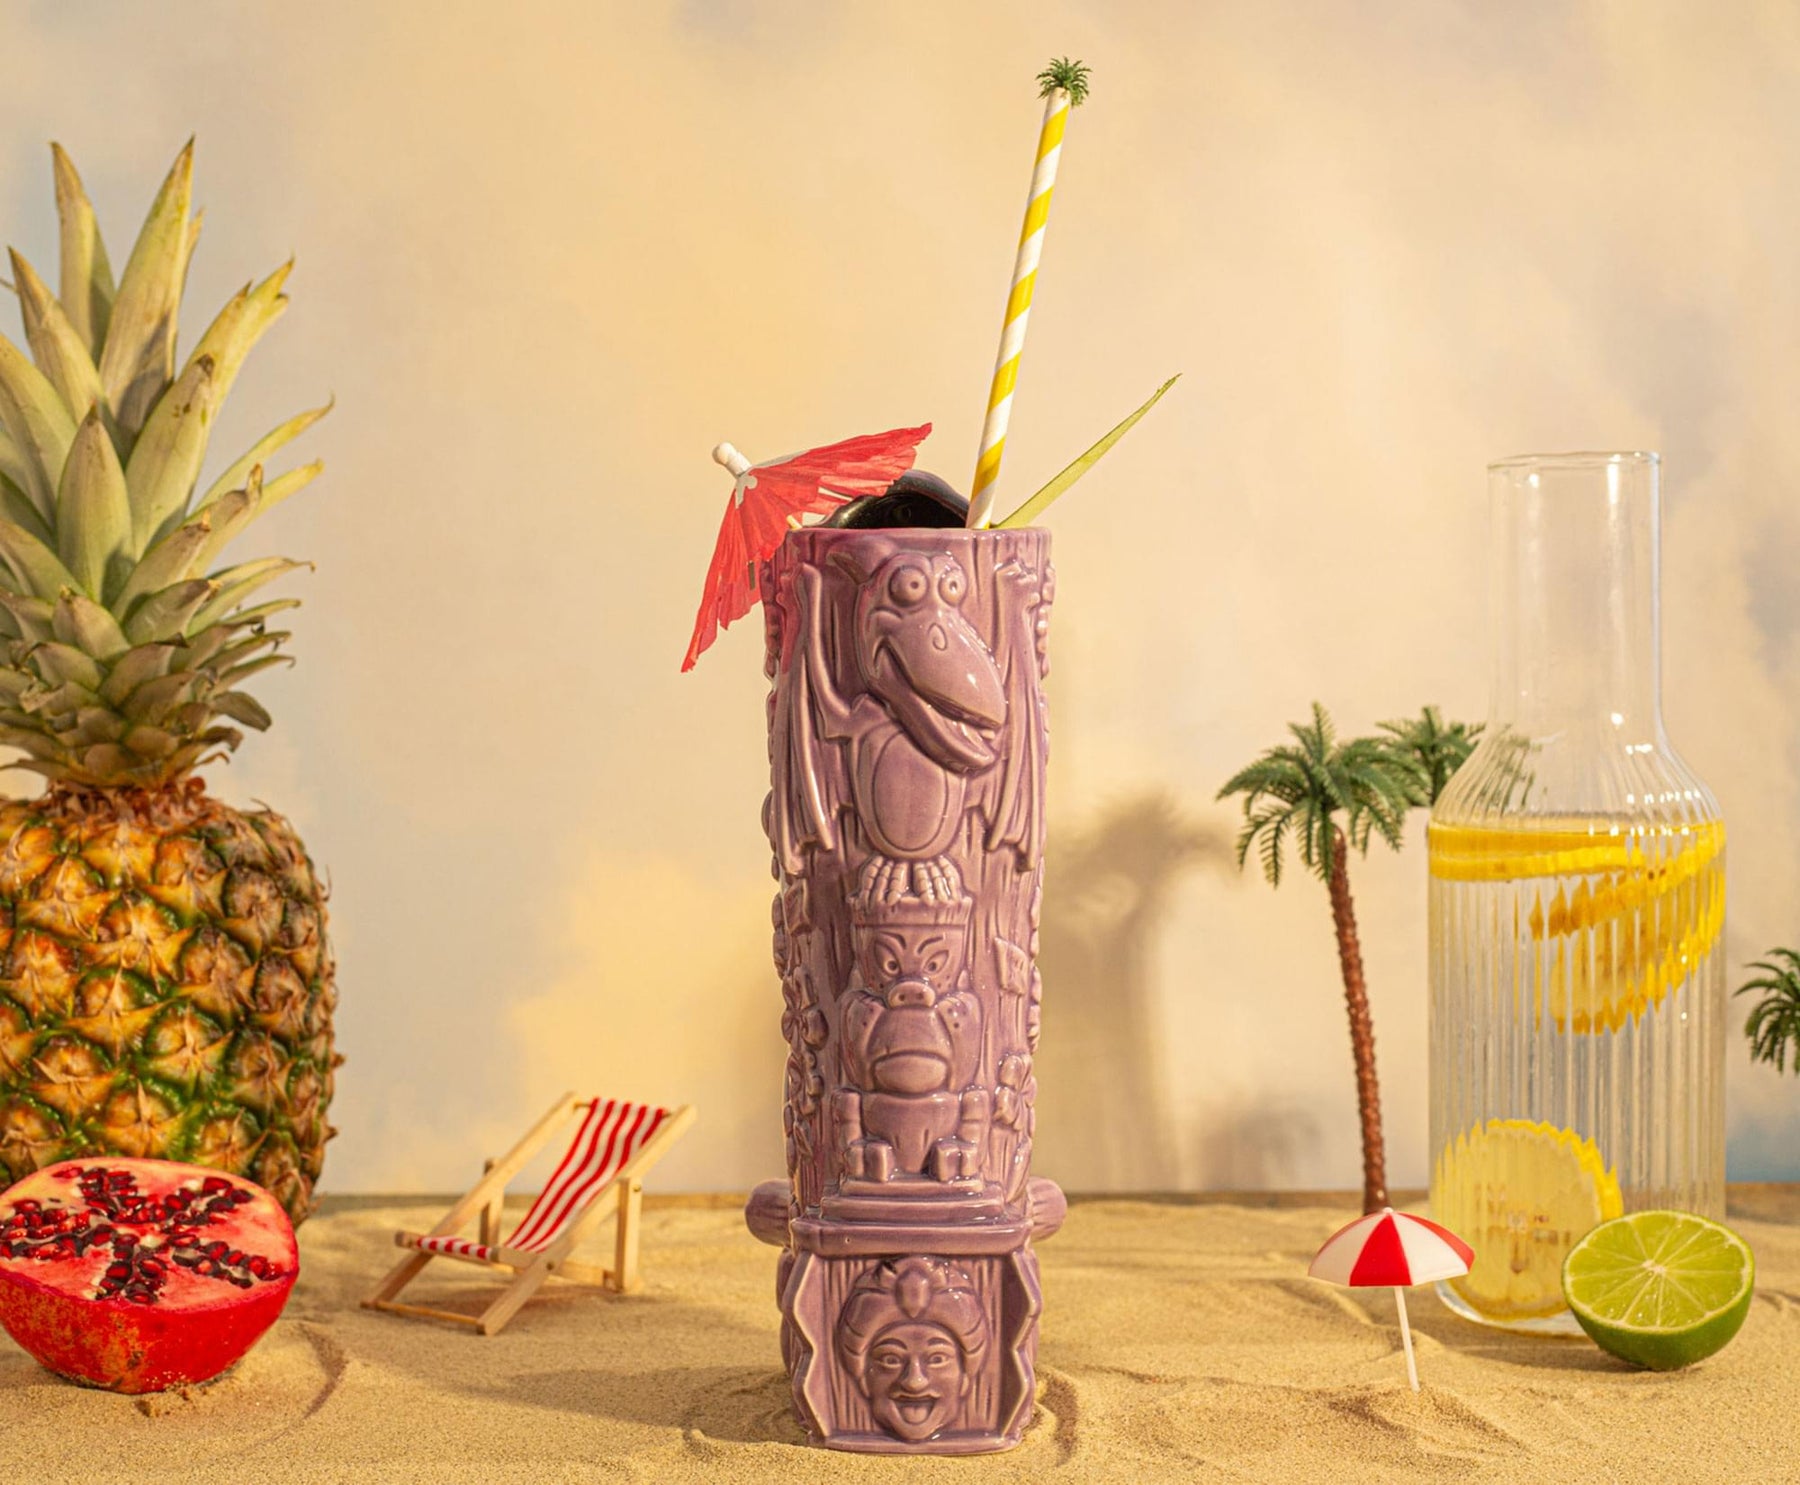 Geeki Tikis Pee-Wee's Playhouse Totem Ceramic Mug | Holds 22 Ounces